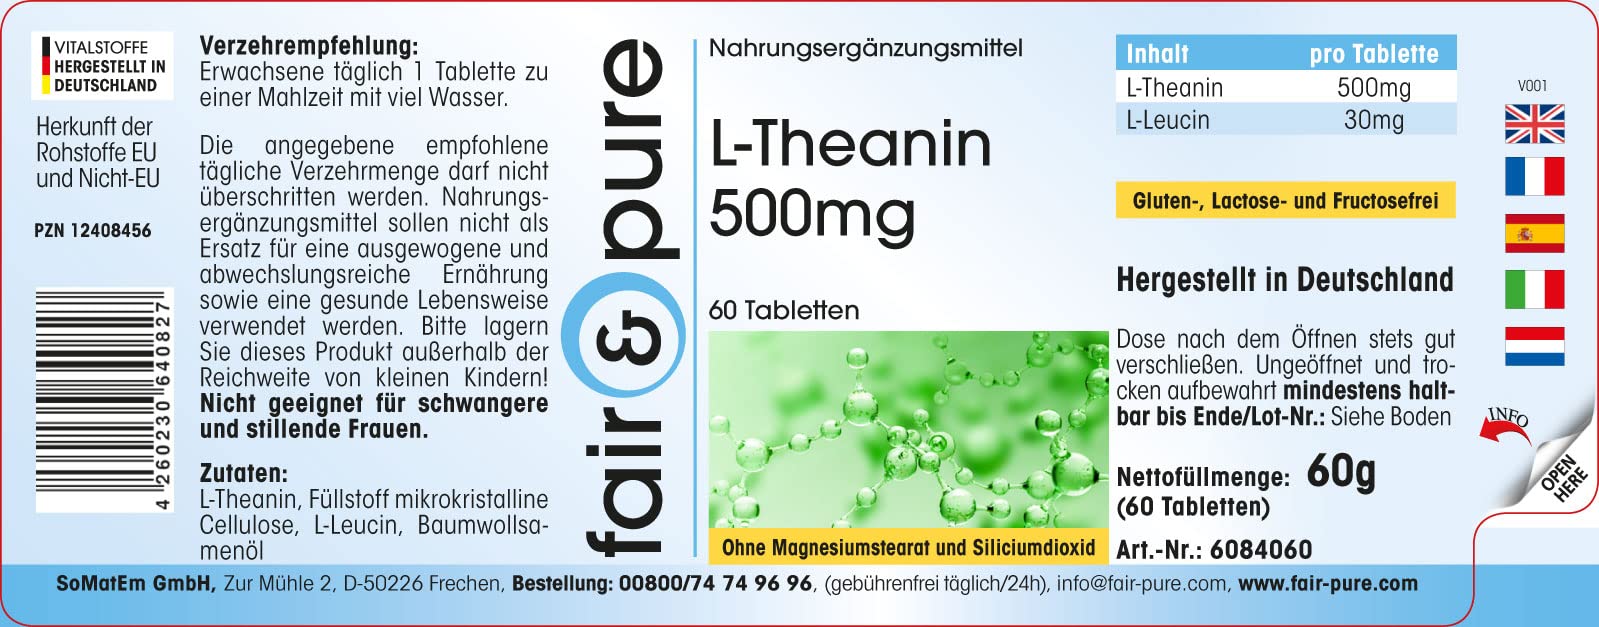 L-Theanine Tablets 500mg - wegańskie - bez stearynianu magnezu - 60 tabletek - aminokwas